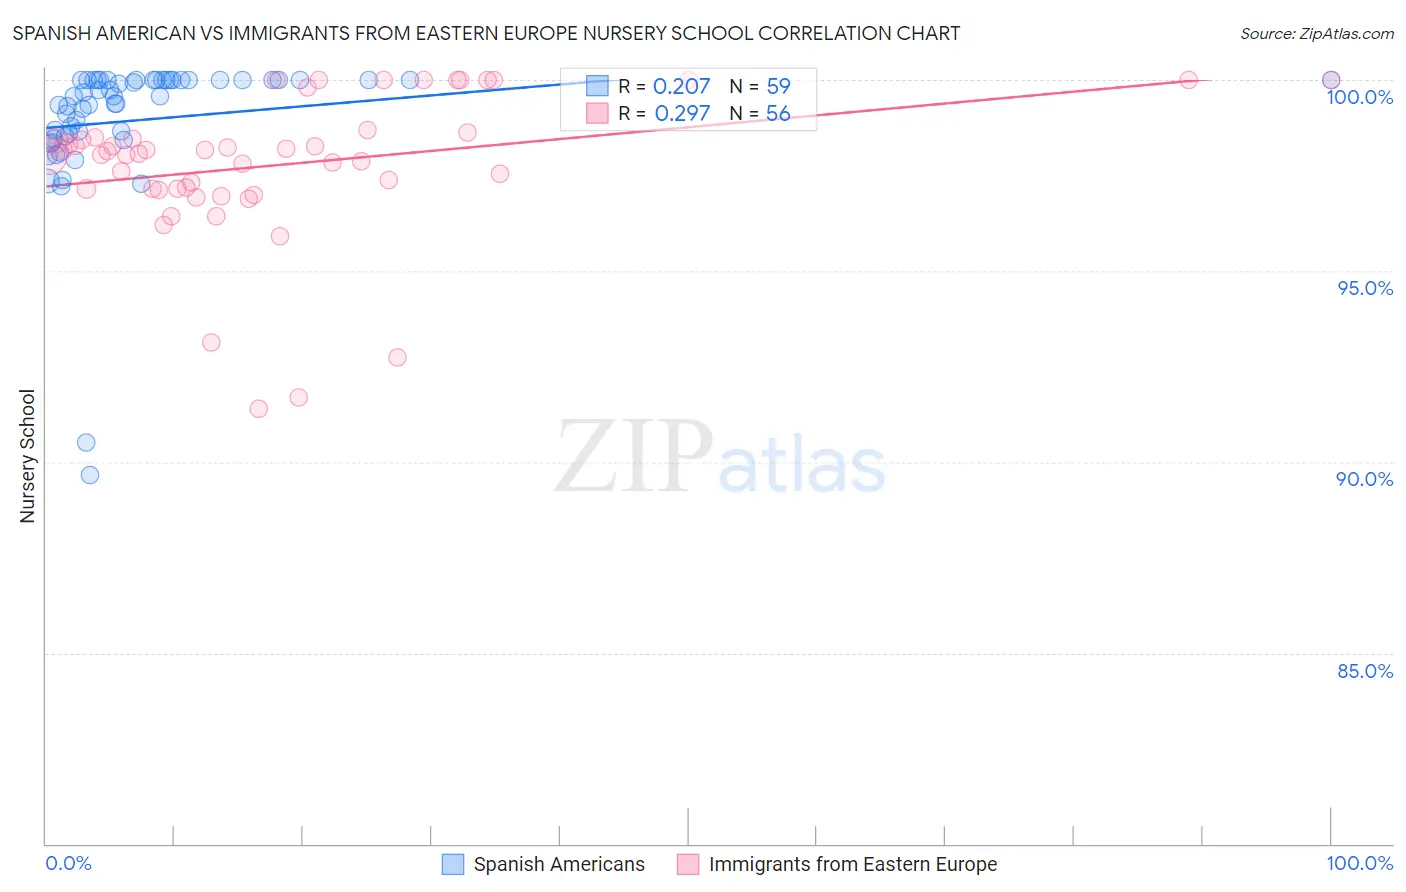 Spanish American vs Immigrants from Eastern Europe Nursery School